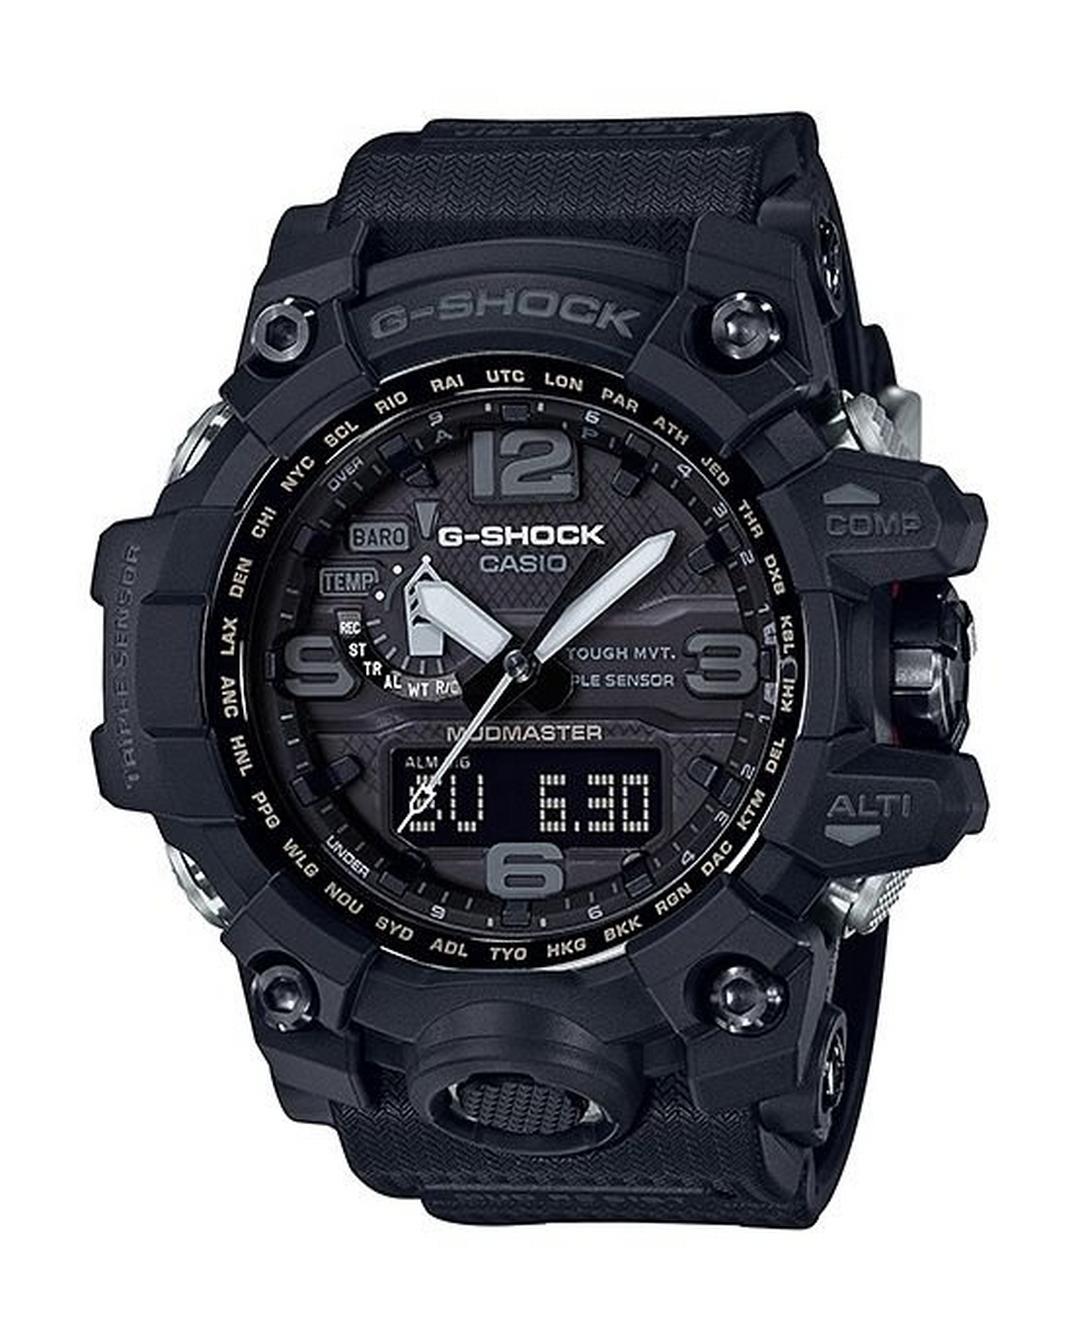 Casio Black Band Sport Watch (GWG-1000-1A1DR)